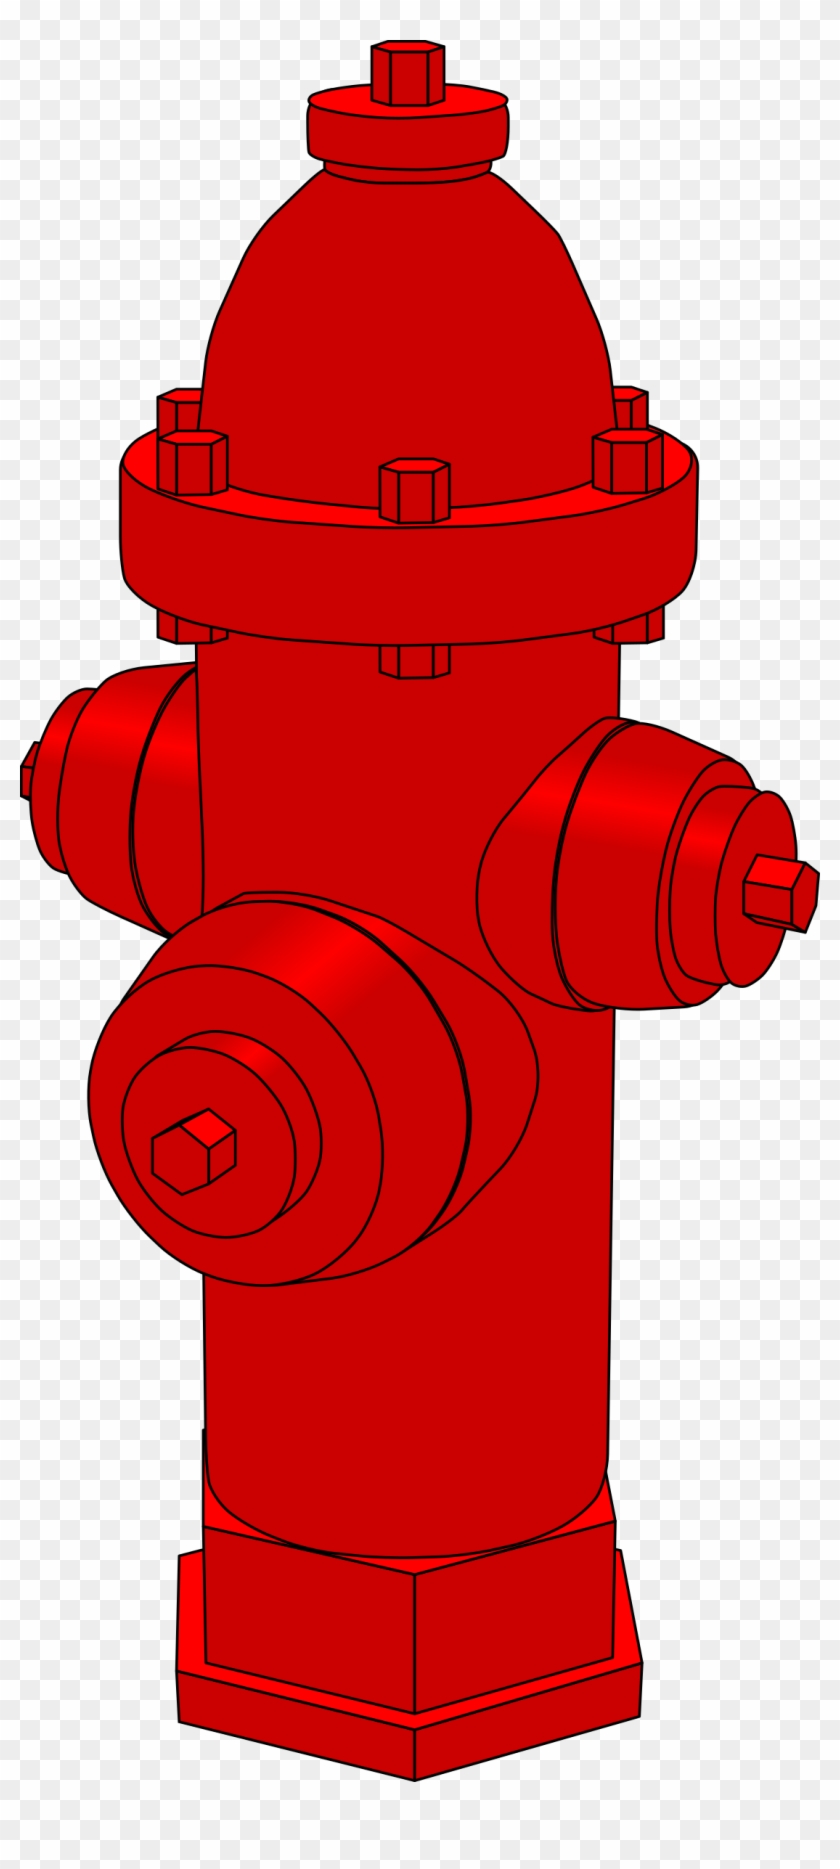 Clipart Fire Hydrant E - Fire Hydrant Clip Art #189474